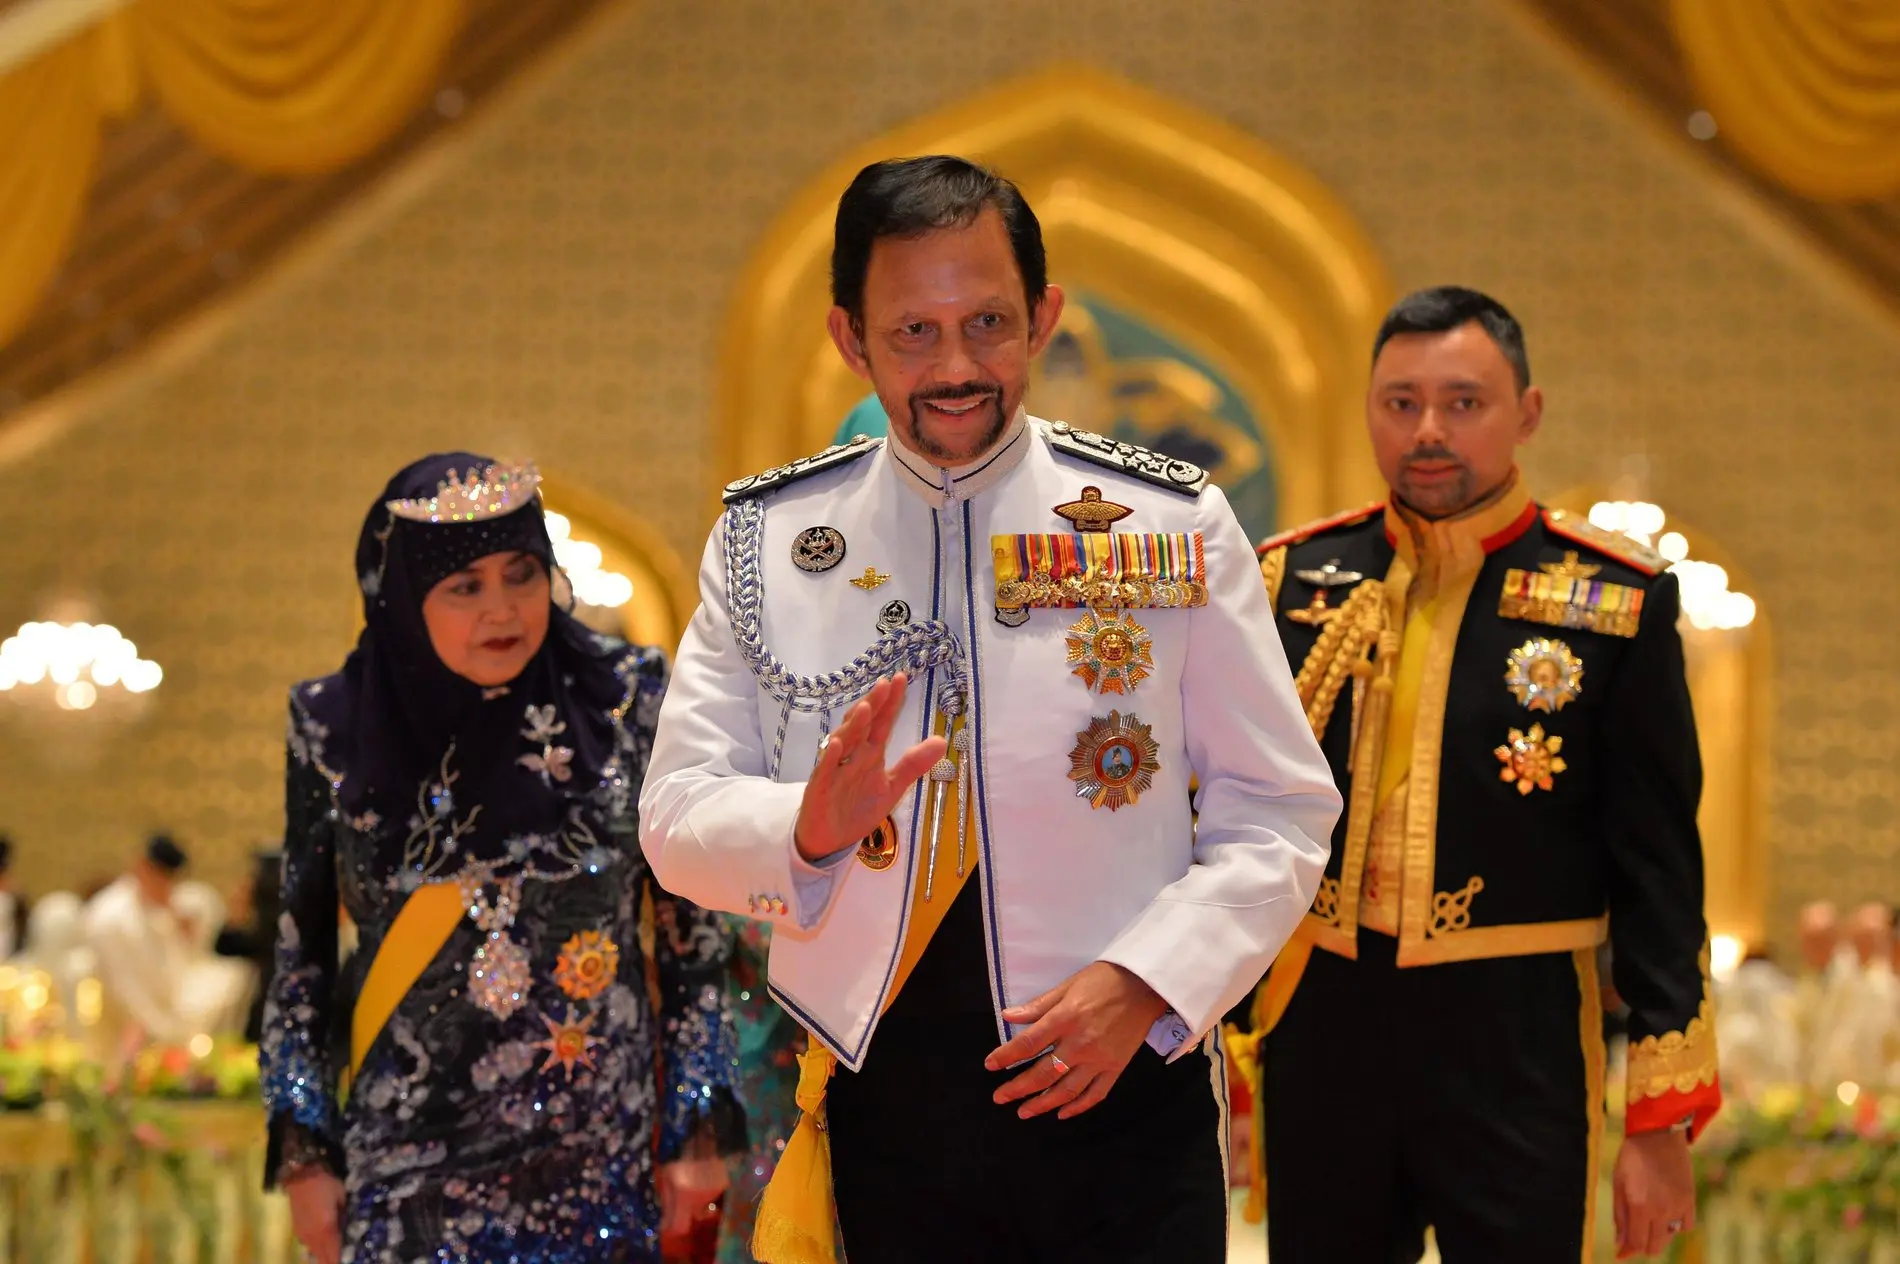 Zu sehen ist  der Sultan von Brunei zusammen mit einem Mann und einer Frau. Er hat die Hand zum Gruß erhoben und lächelt.